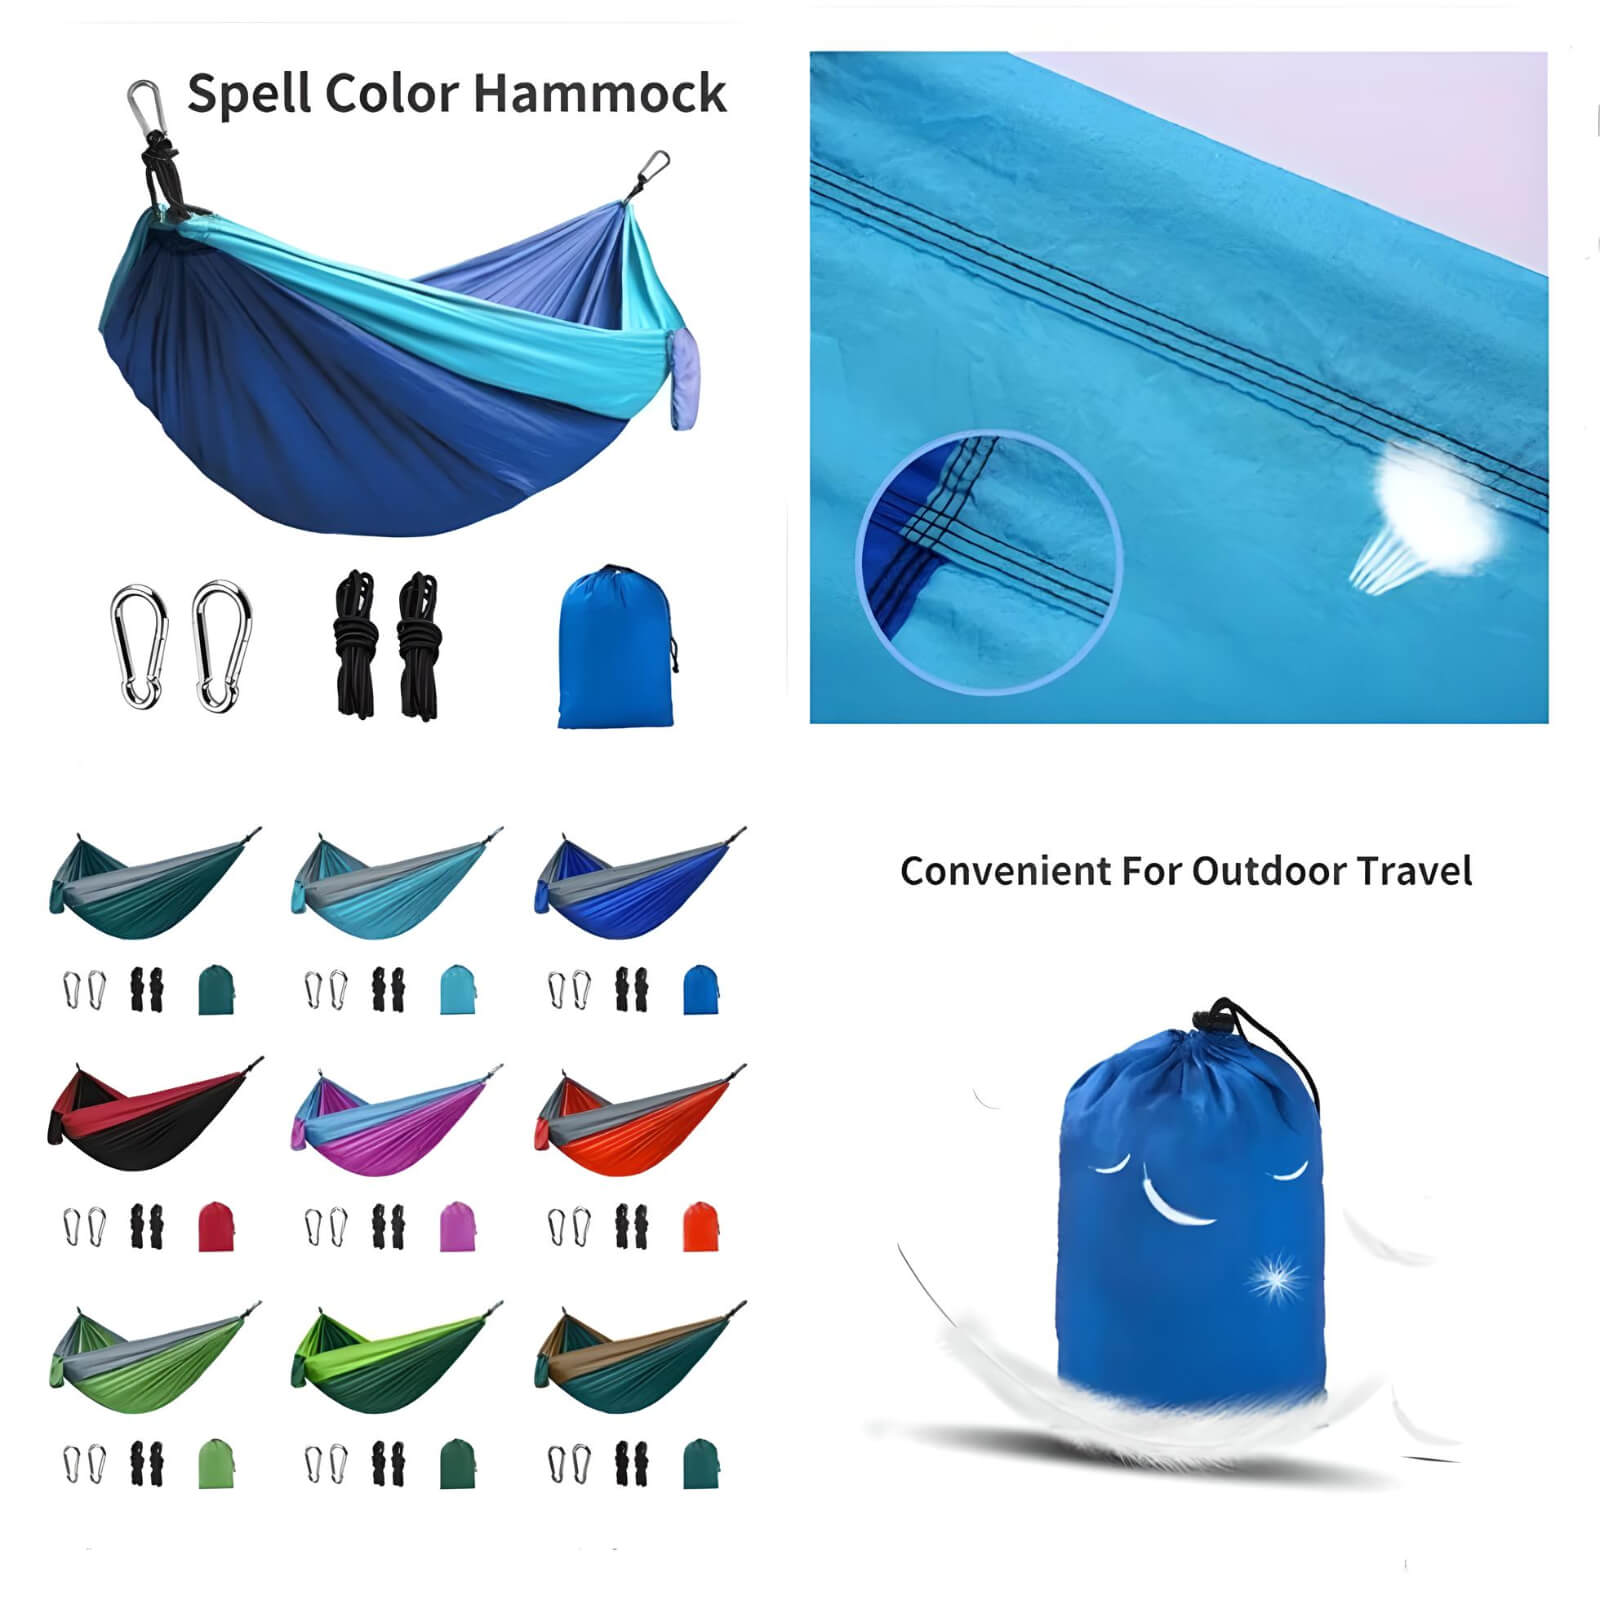 light-weight-back-packing-hammock-spell-color-hammock